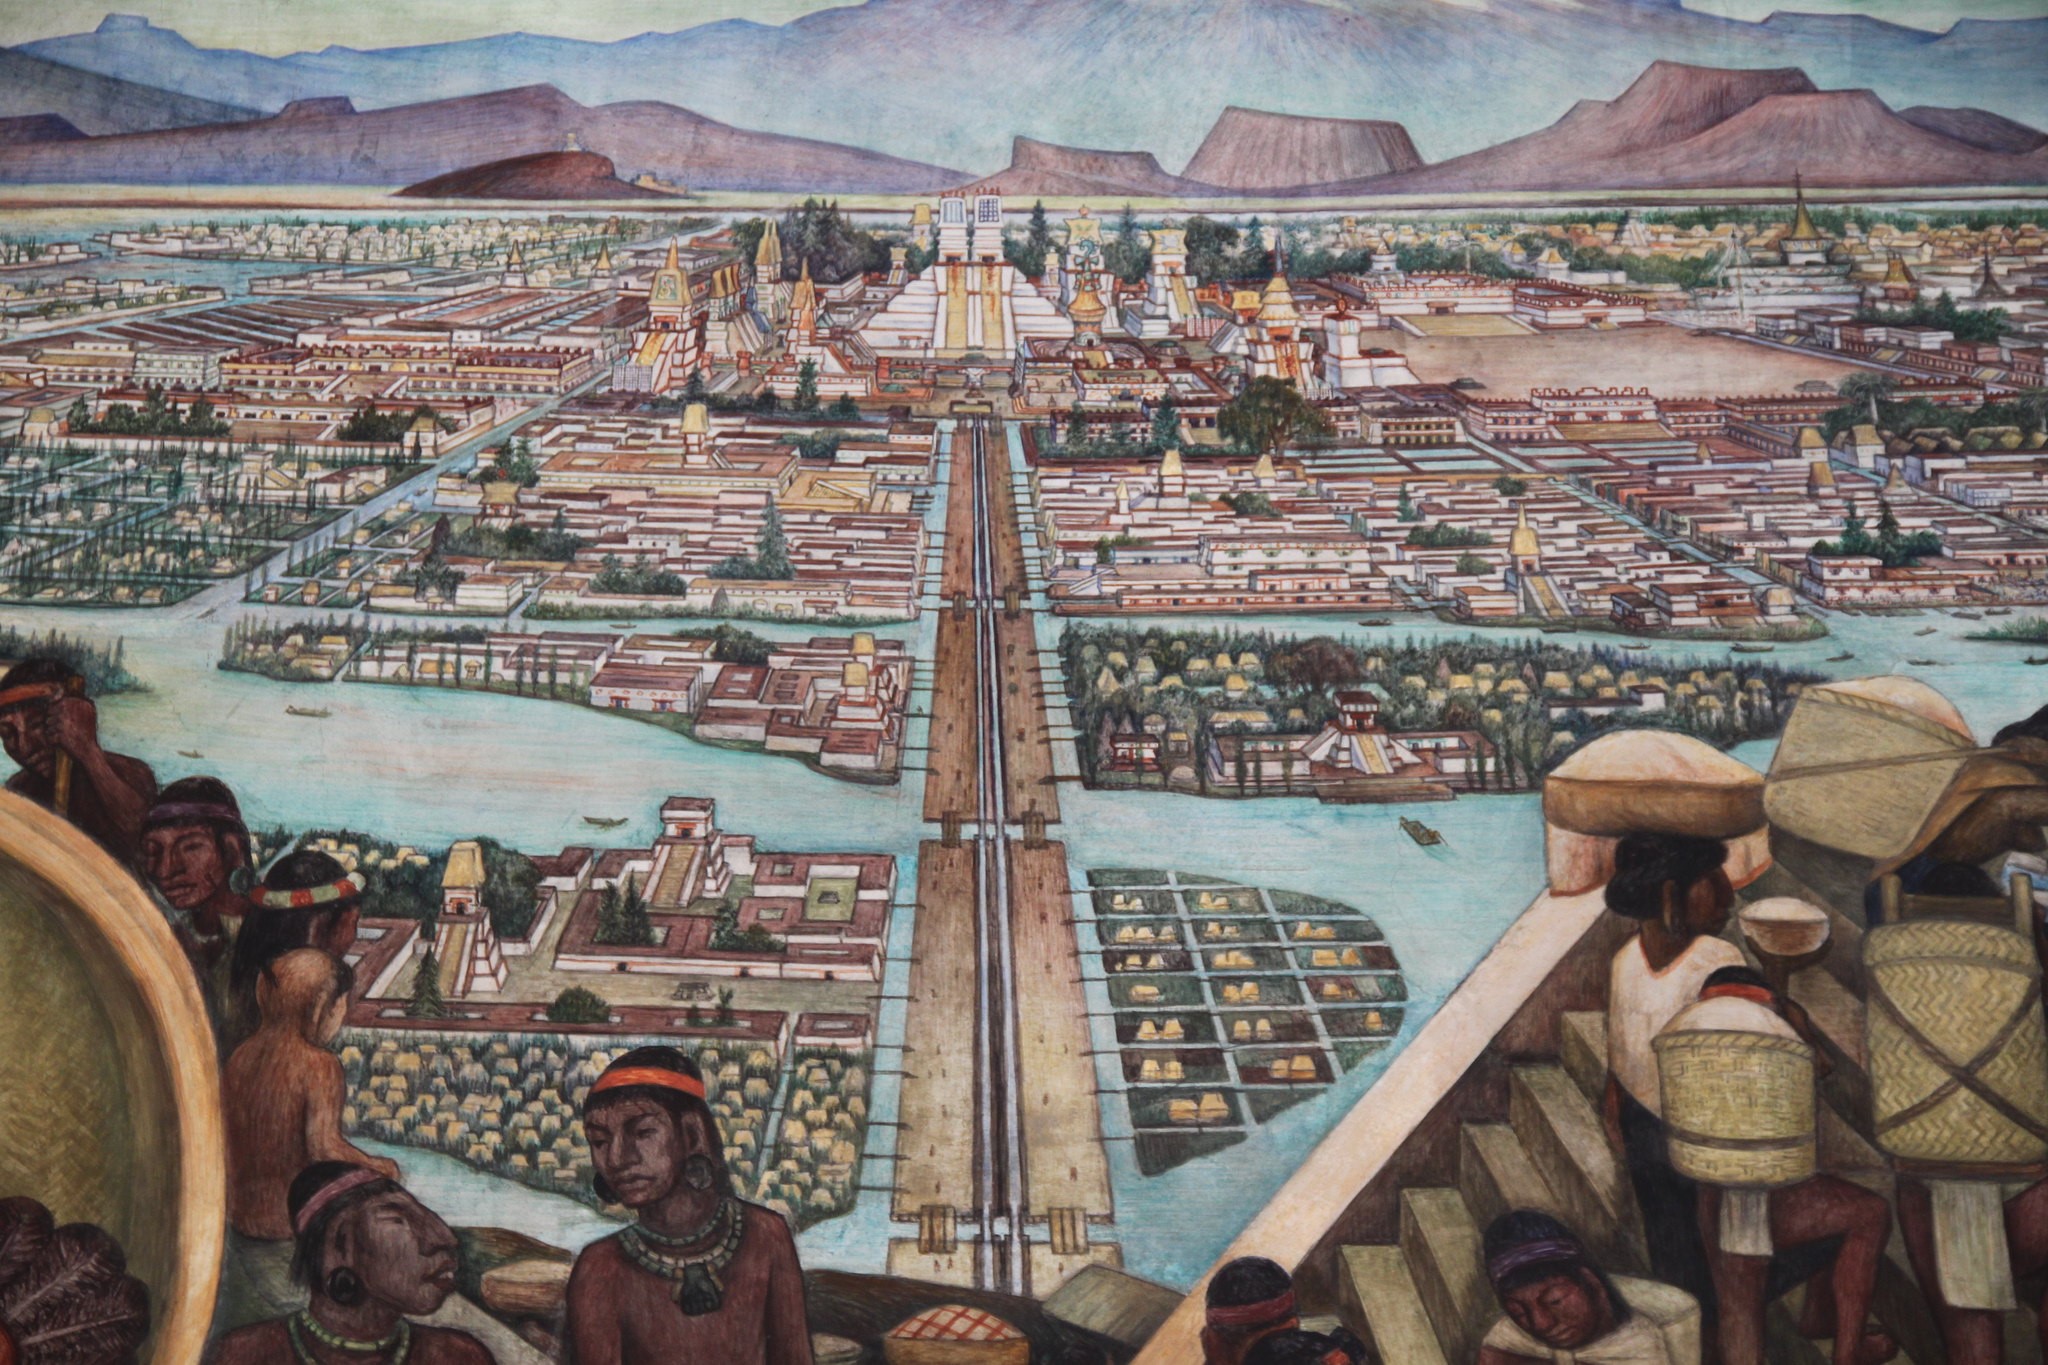 Gemälde von Tenochtitlan vor der Eroberung durch die Spanier. Foto: Gary Todd, CCO1.0